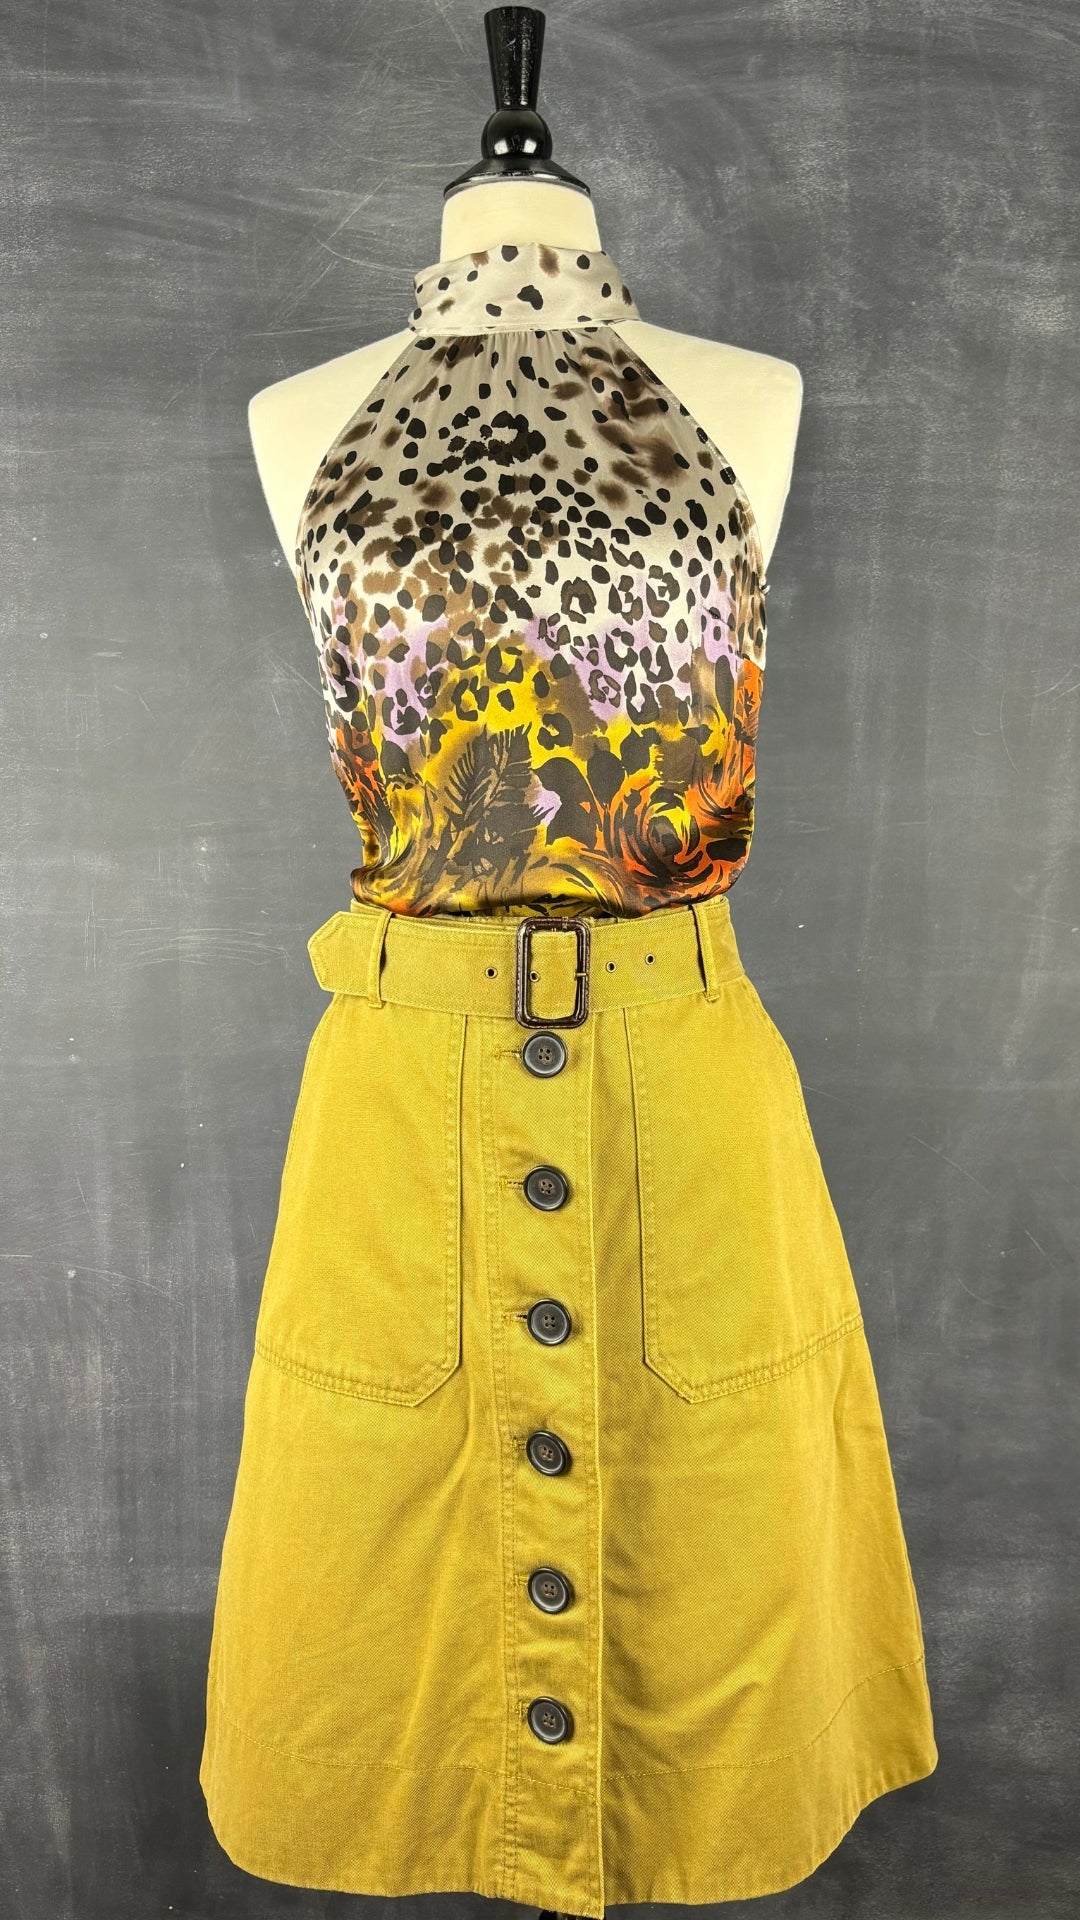 Camisole en soie florale et léopard Guess by Marciano, taille xs. Vue de l'agencement avec la jupe boutonnée J.Crew.